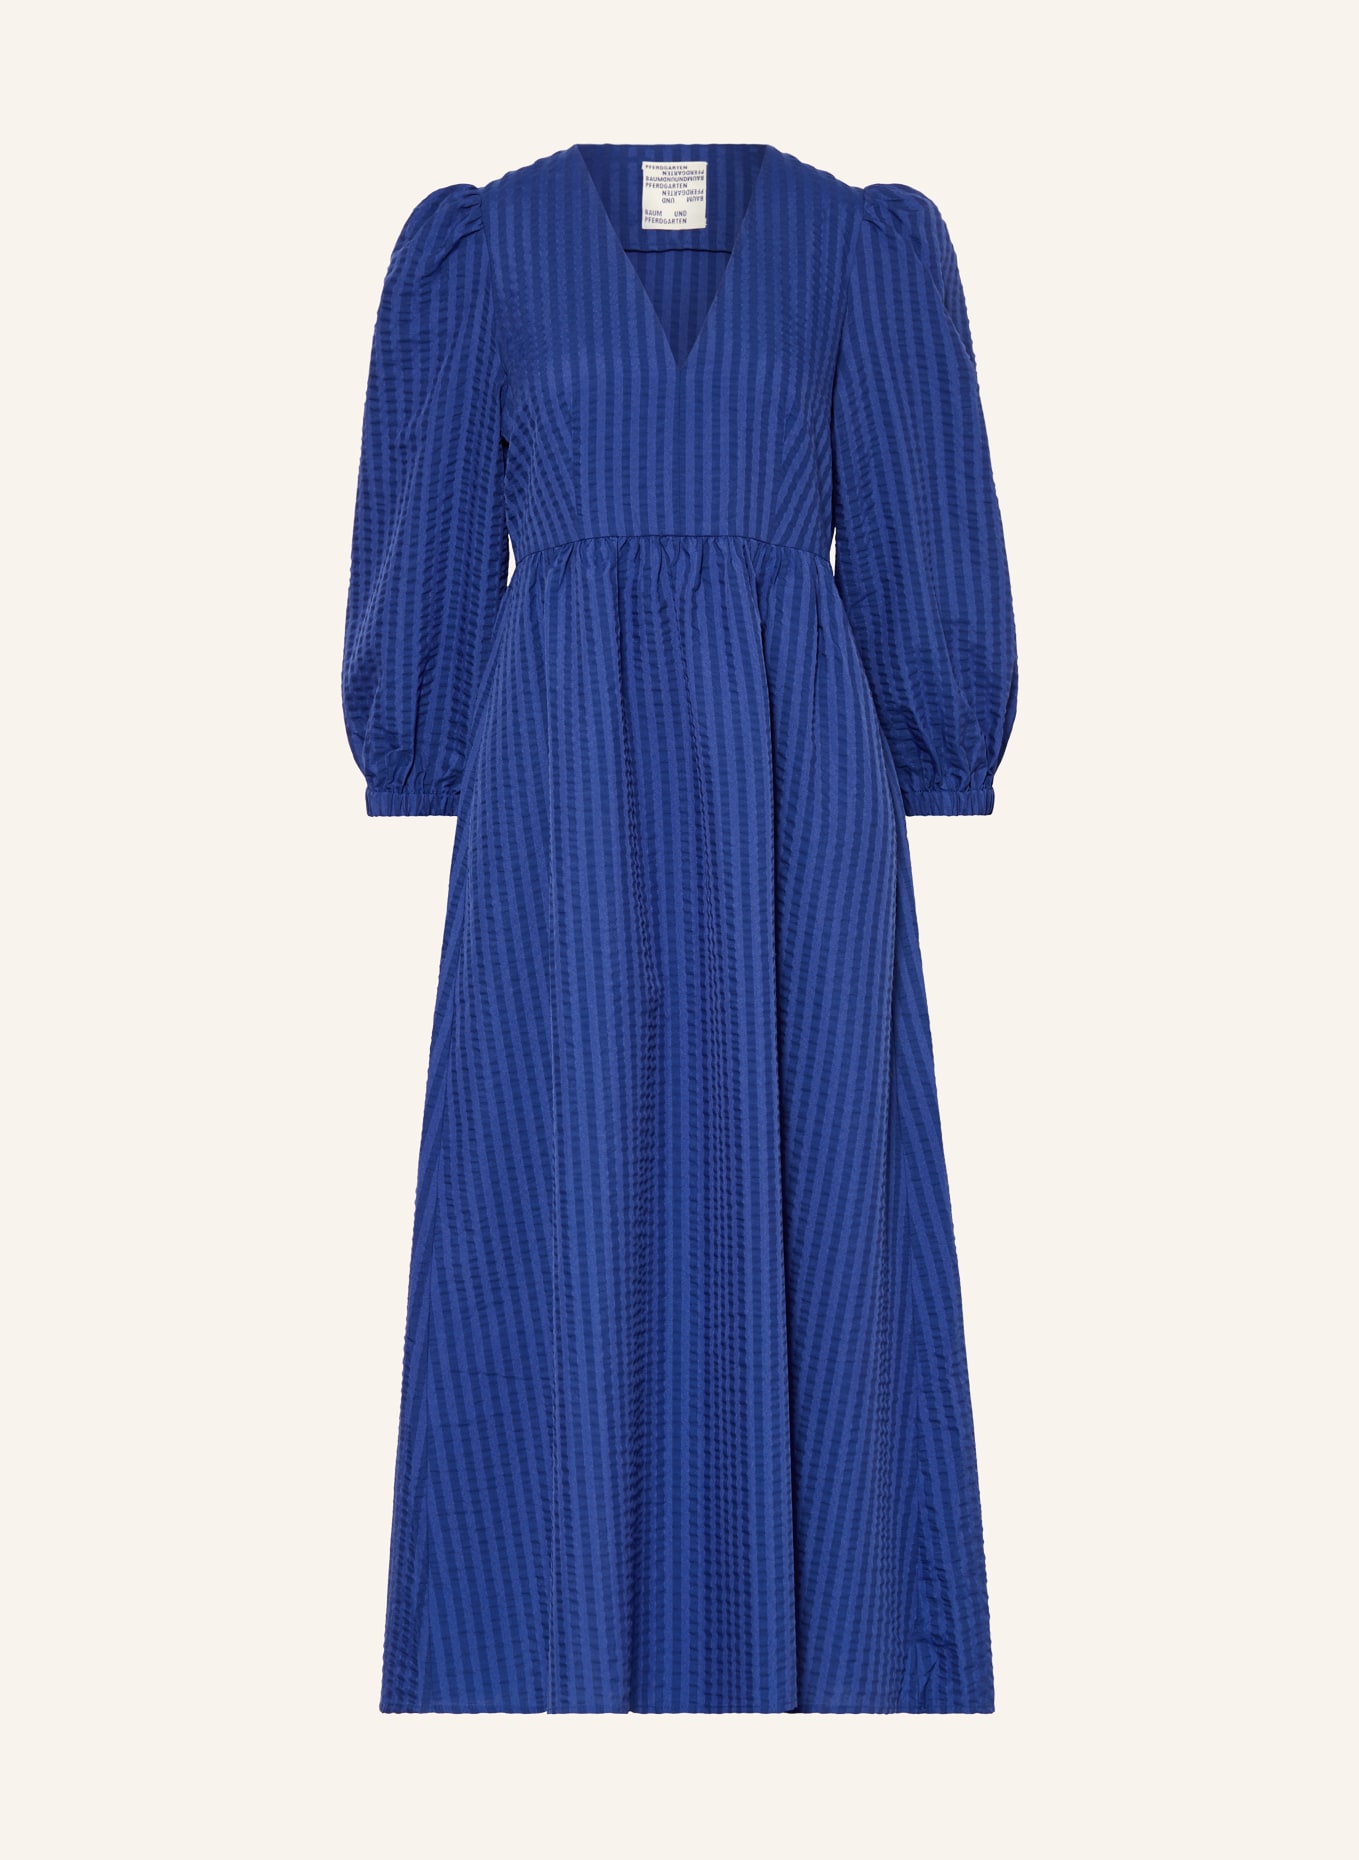 BAUM UND PFERDGARTEN Kleid AIMEE, Farbe: BLAU (Bild 1)